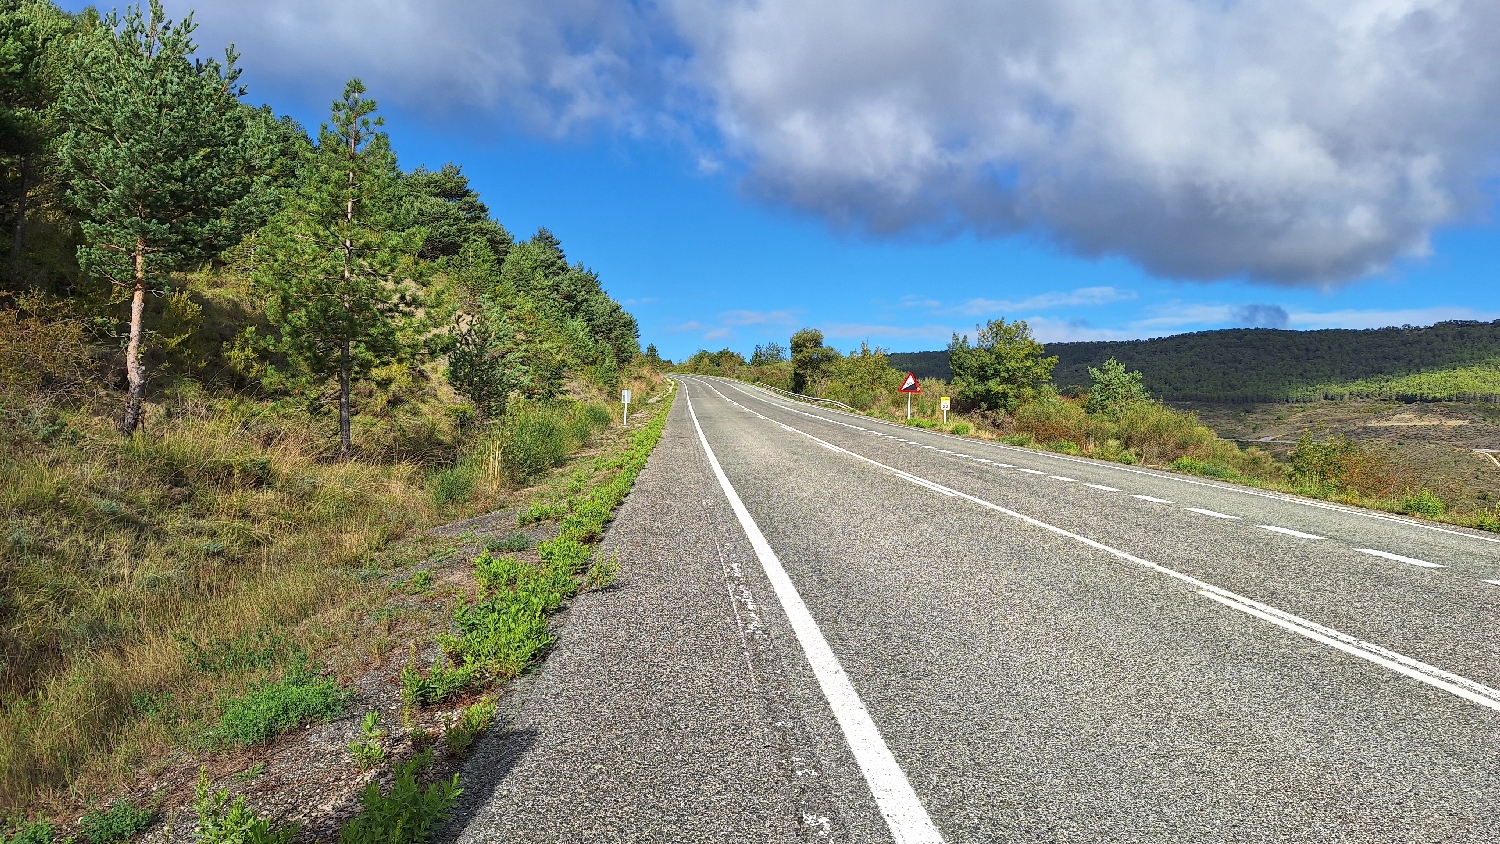 El Camino, Aragon út, majdnem másfél órán keresztül országút mellett kell gyalogolni, 9 %-os emelkedő